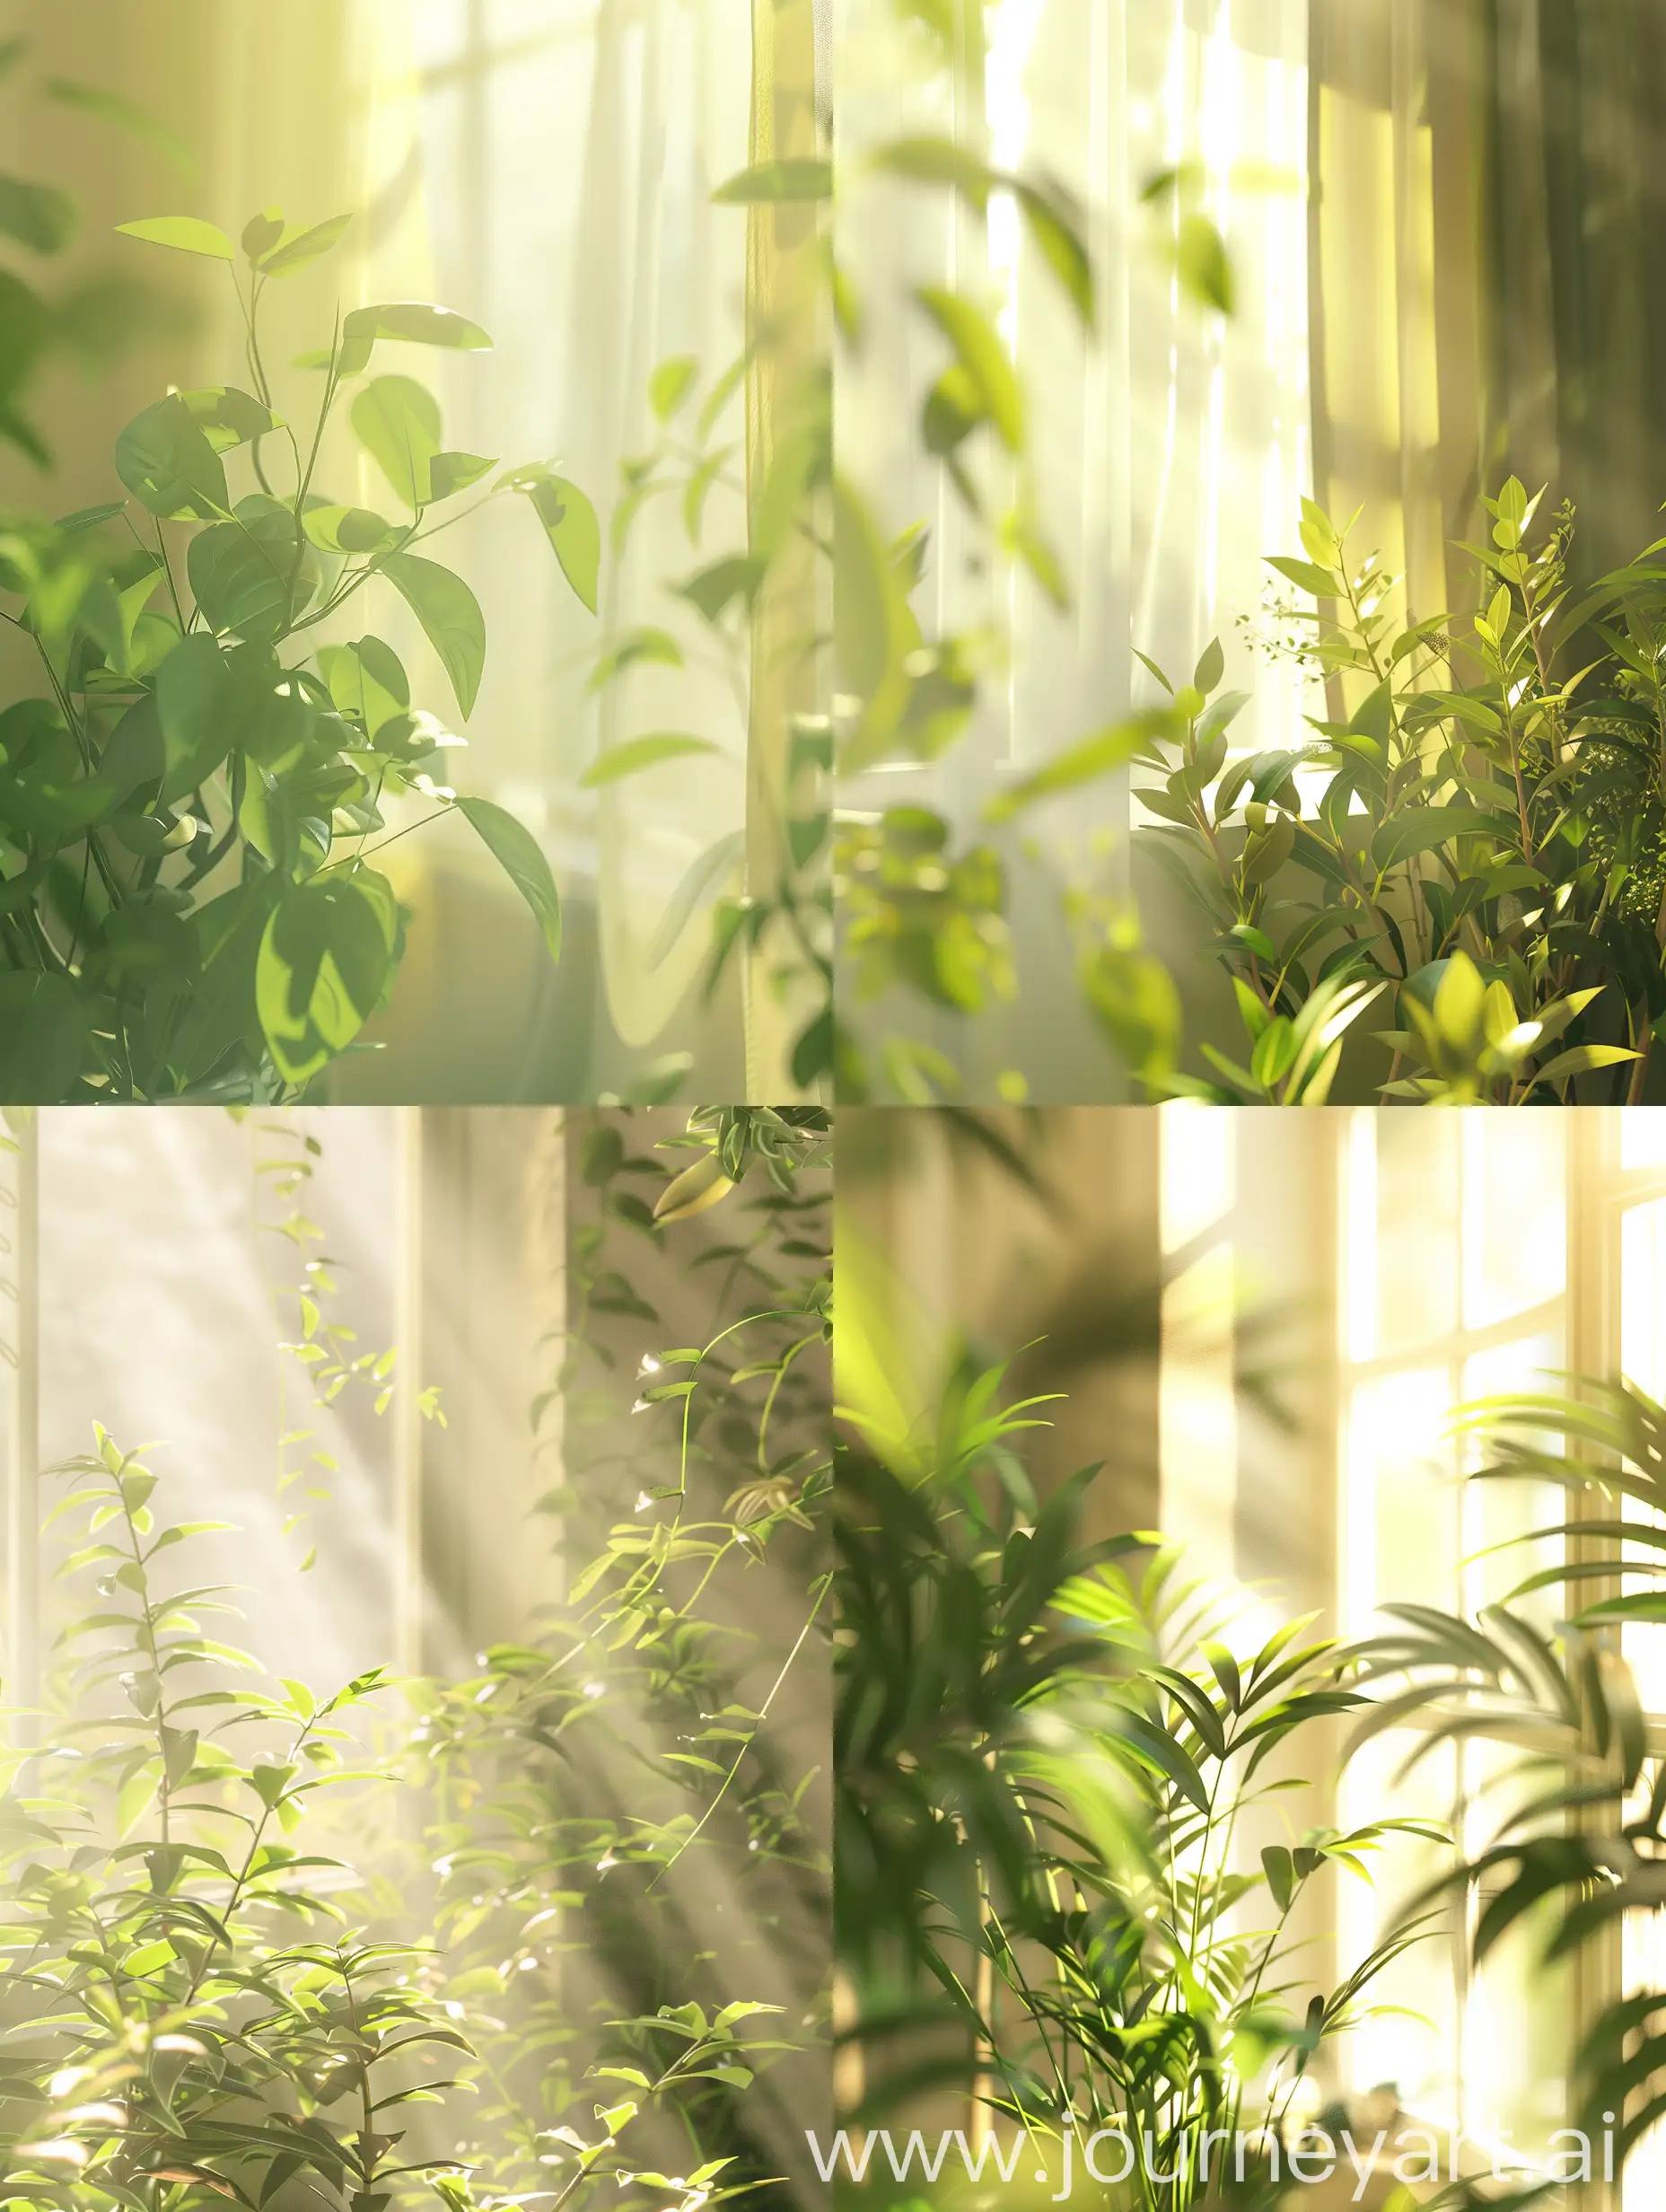 春天气息，明亮柔和的光线，有绿植的居家环境，柔和黄绿色调，低饱和度，细节丰富，写实摄影风格，高清晰度，8K，自然光，0ctane render渲染器